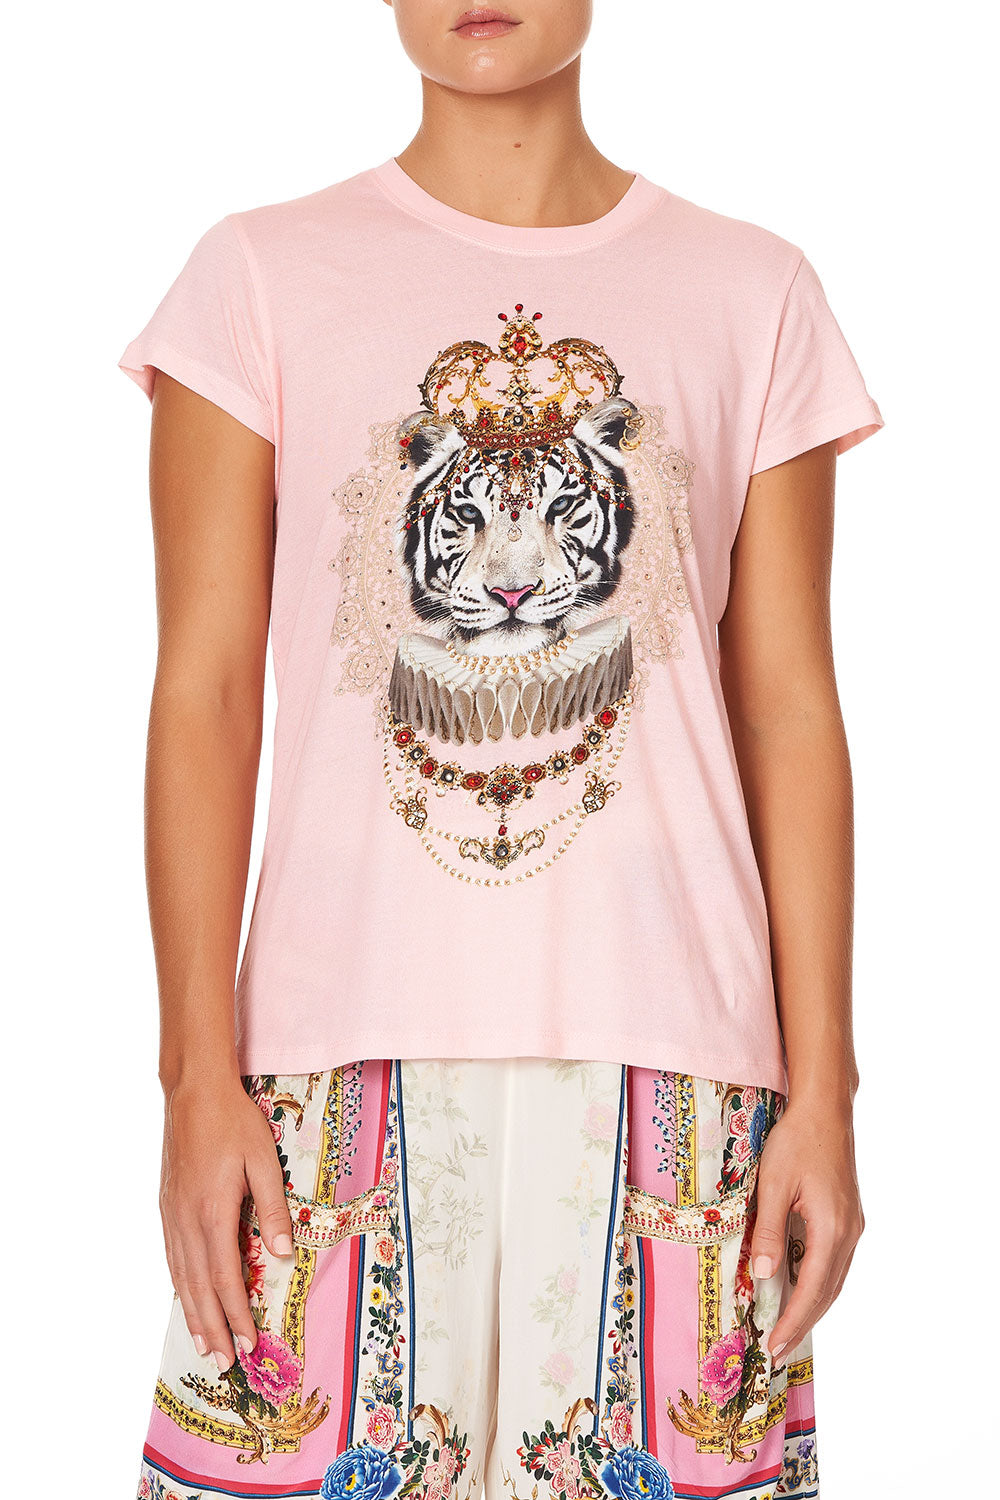 palace tiger shirt